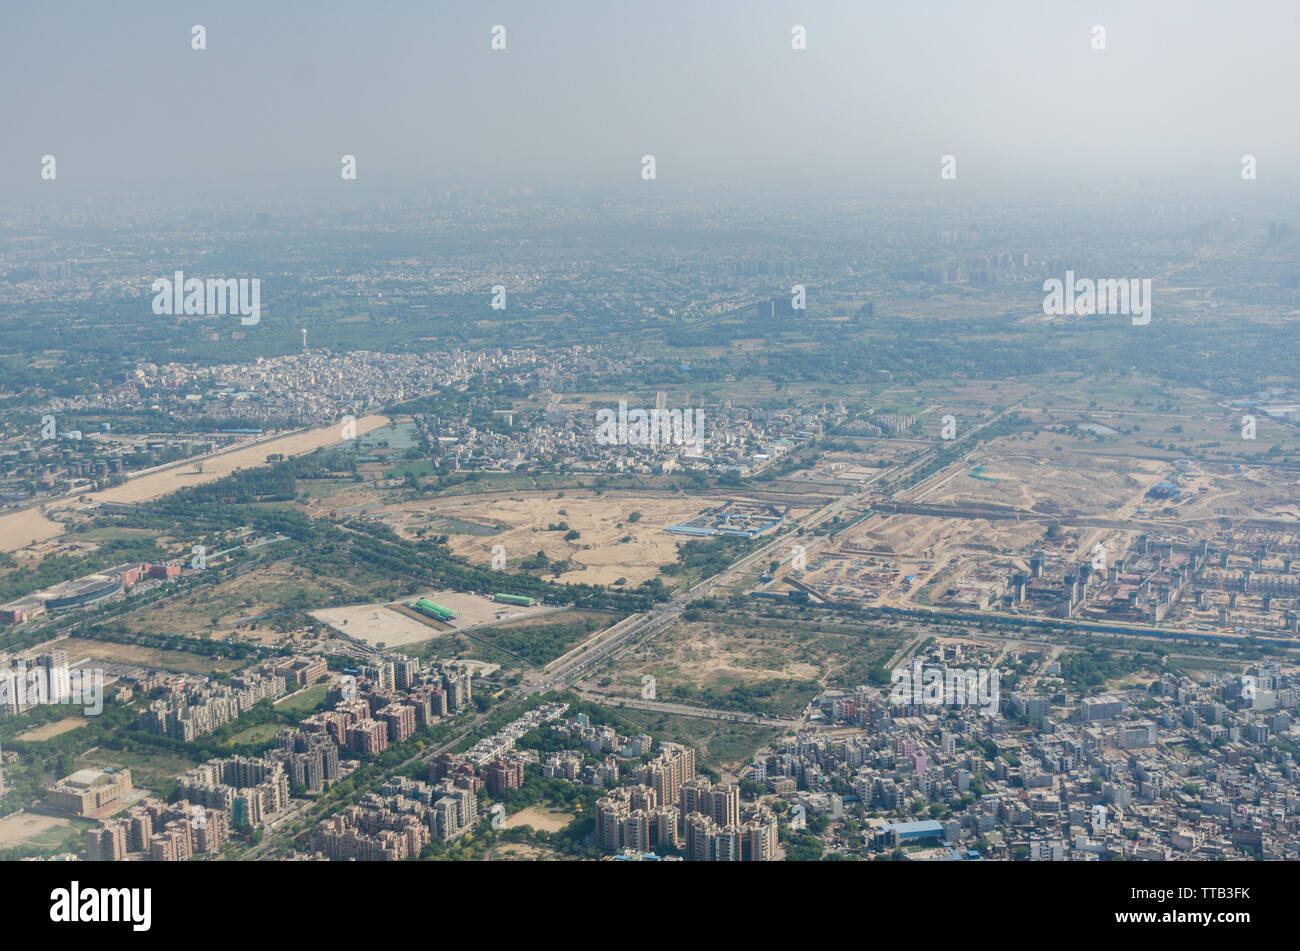 Vista del paisaje urbano de Delhi desde flight ventana a través de la neblina contaminada en el aire. La calidad del aire en Delhi es el peor de cualquier gran ciudad del mundo. Foto de stock